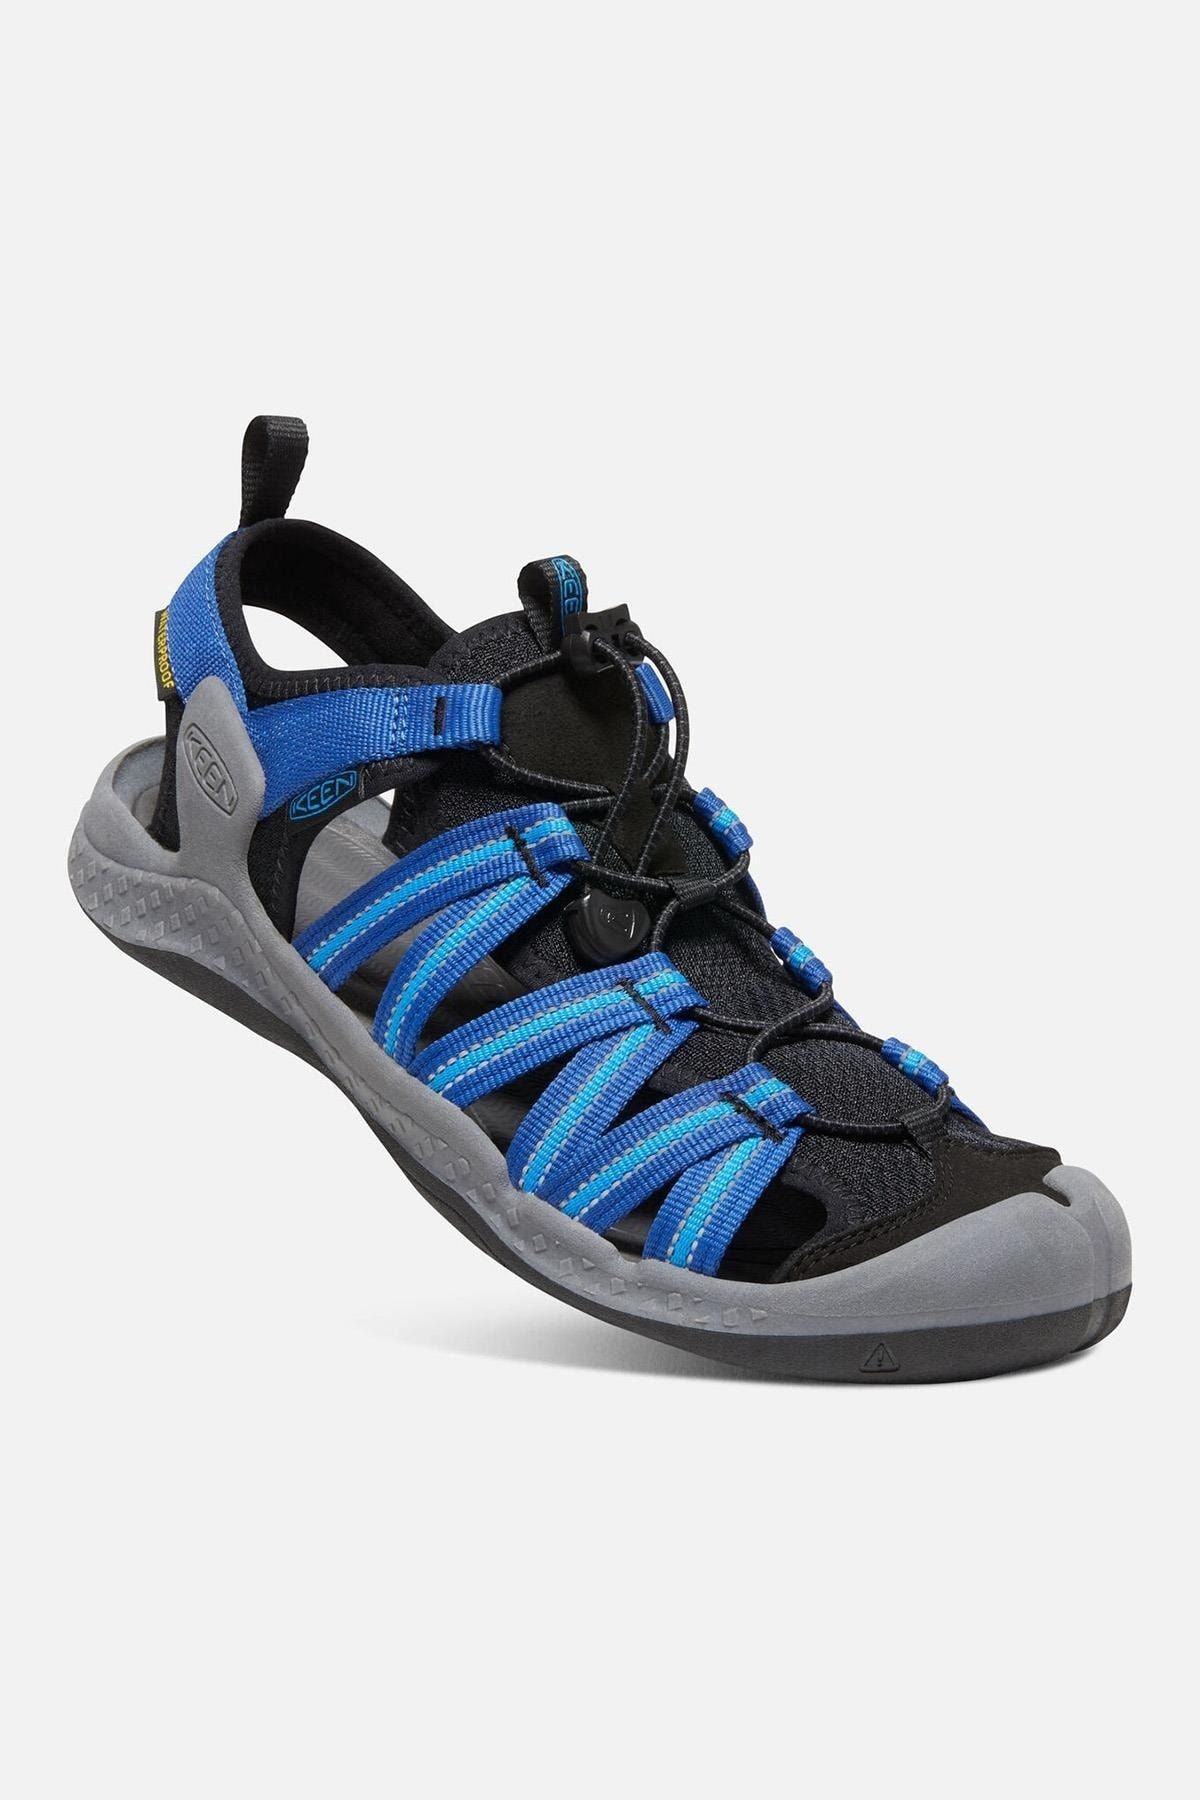 Keen Drıft Creek H2 - Erkek Sandalet - Siyah/mavi